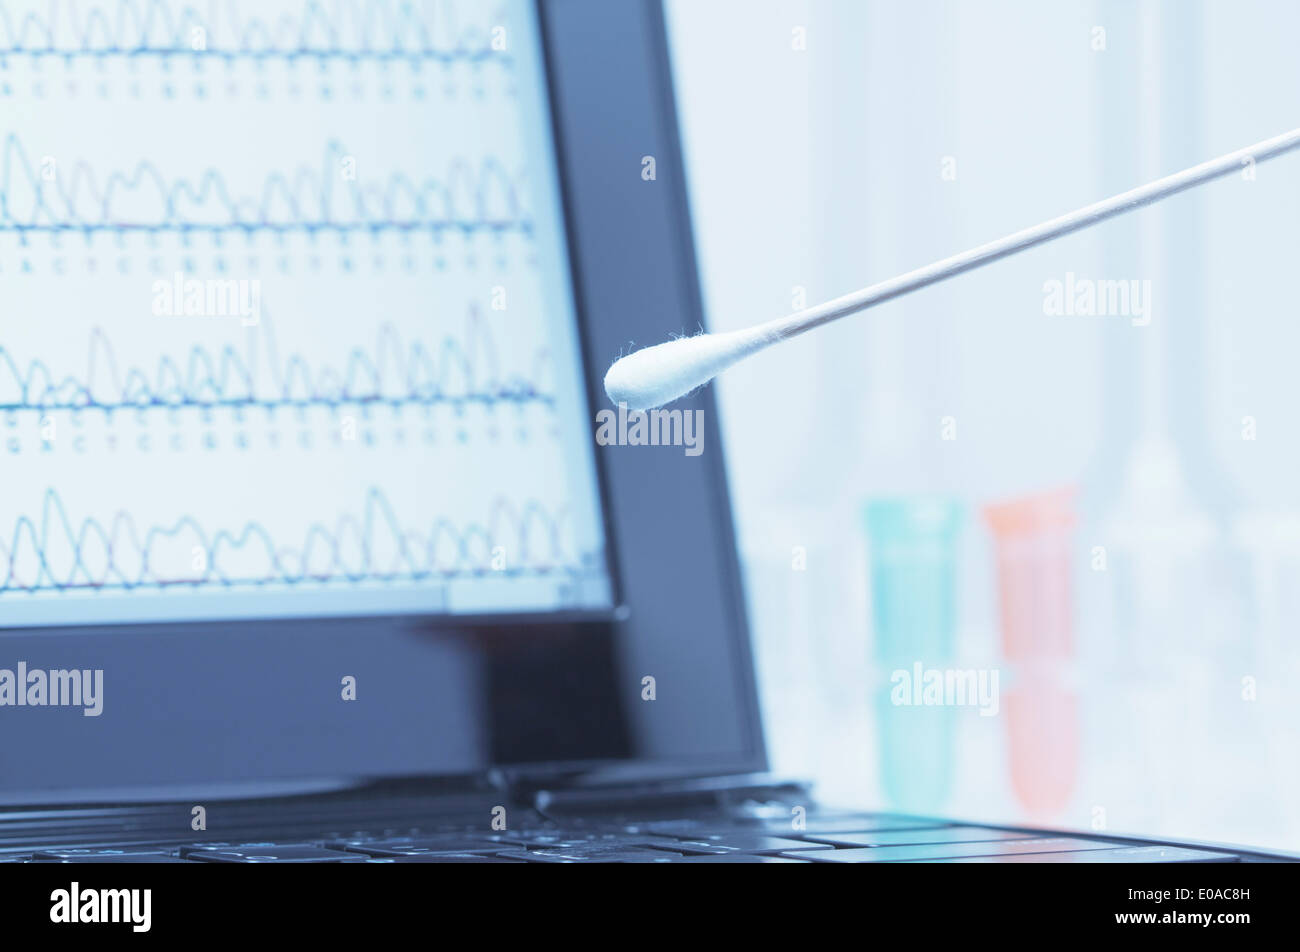 Coton-tige avec de la salive devant un écran d'ordinateur portable qui affiche les résultats de séquençage automatisé de l'ADN Banque D'Images